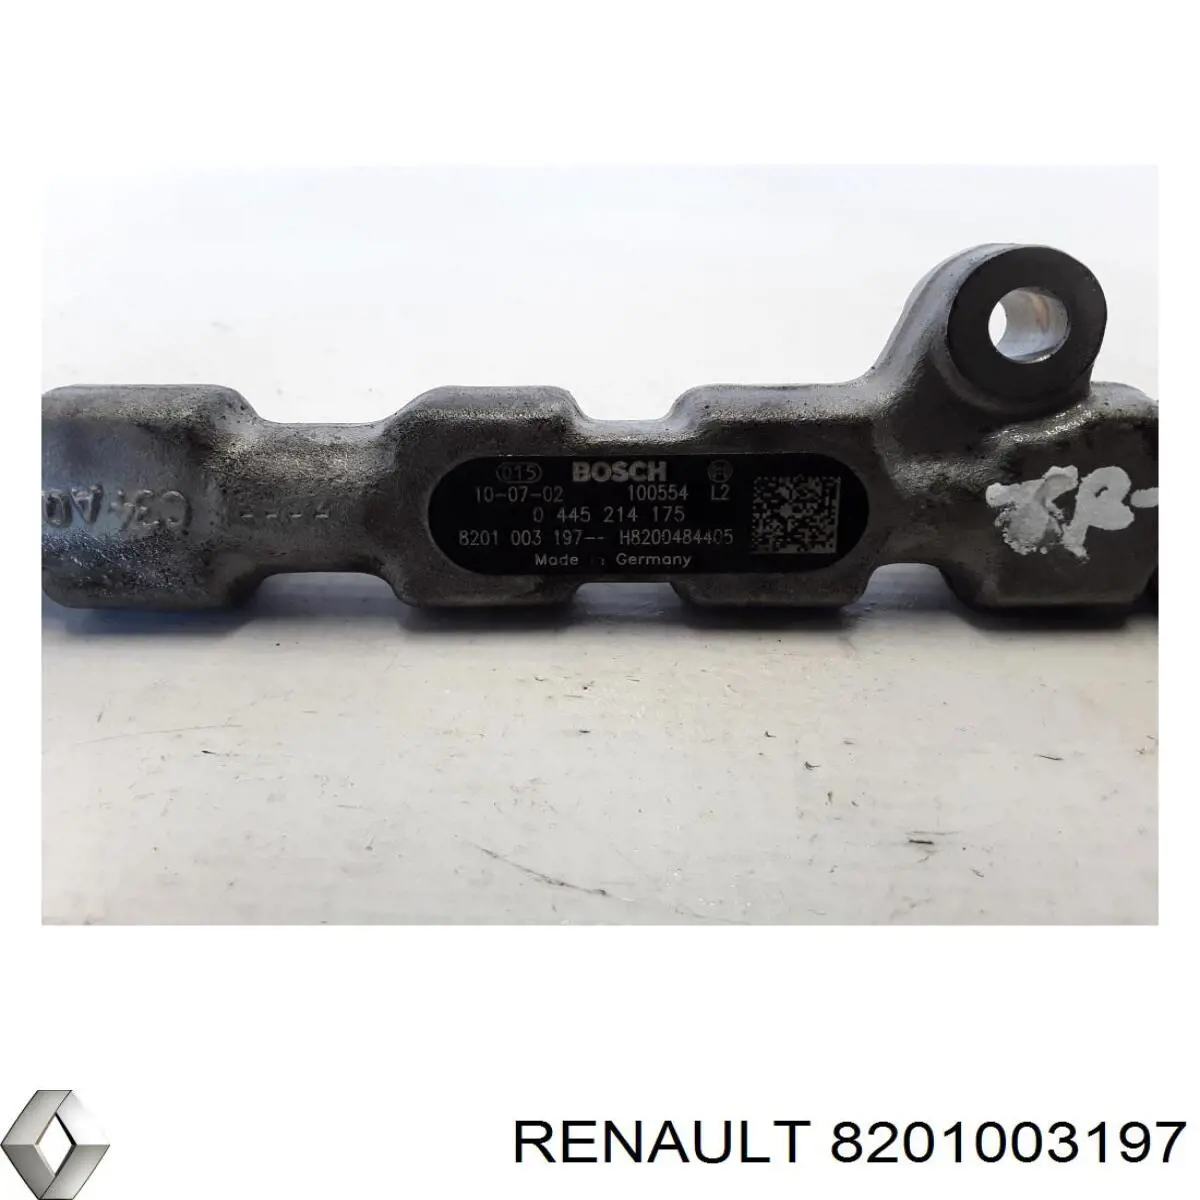 8201003197 Renault (RVI) rampa de inyectores